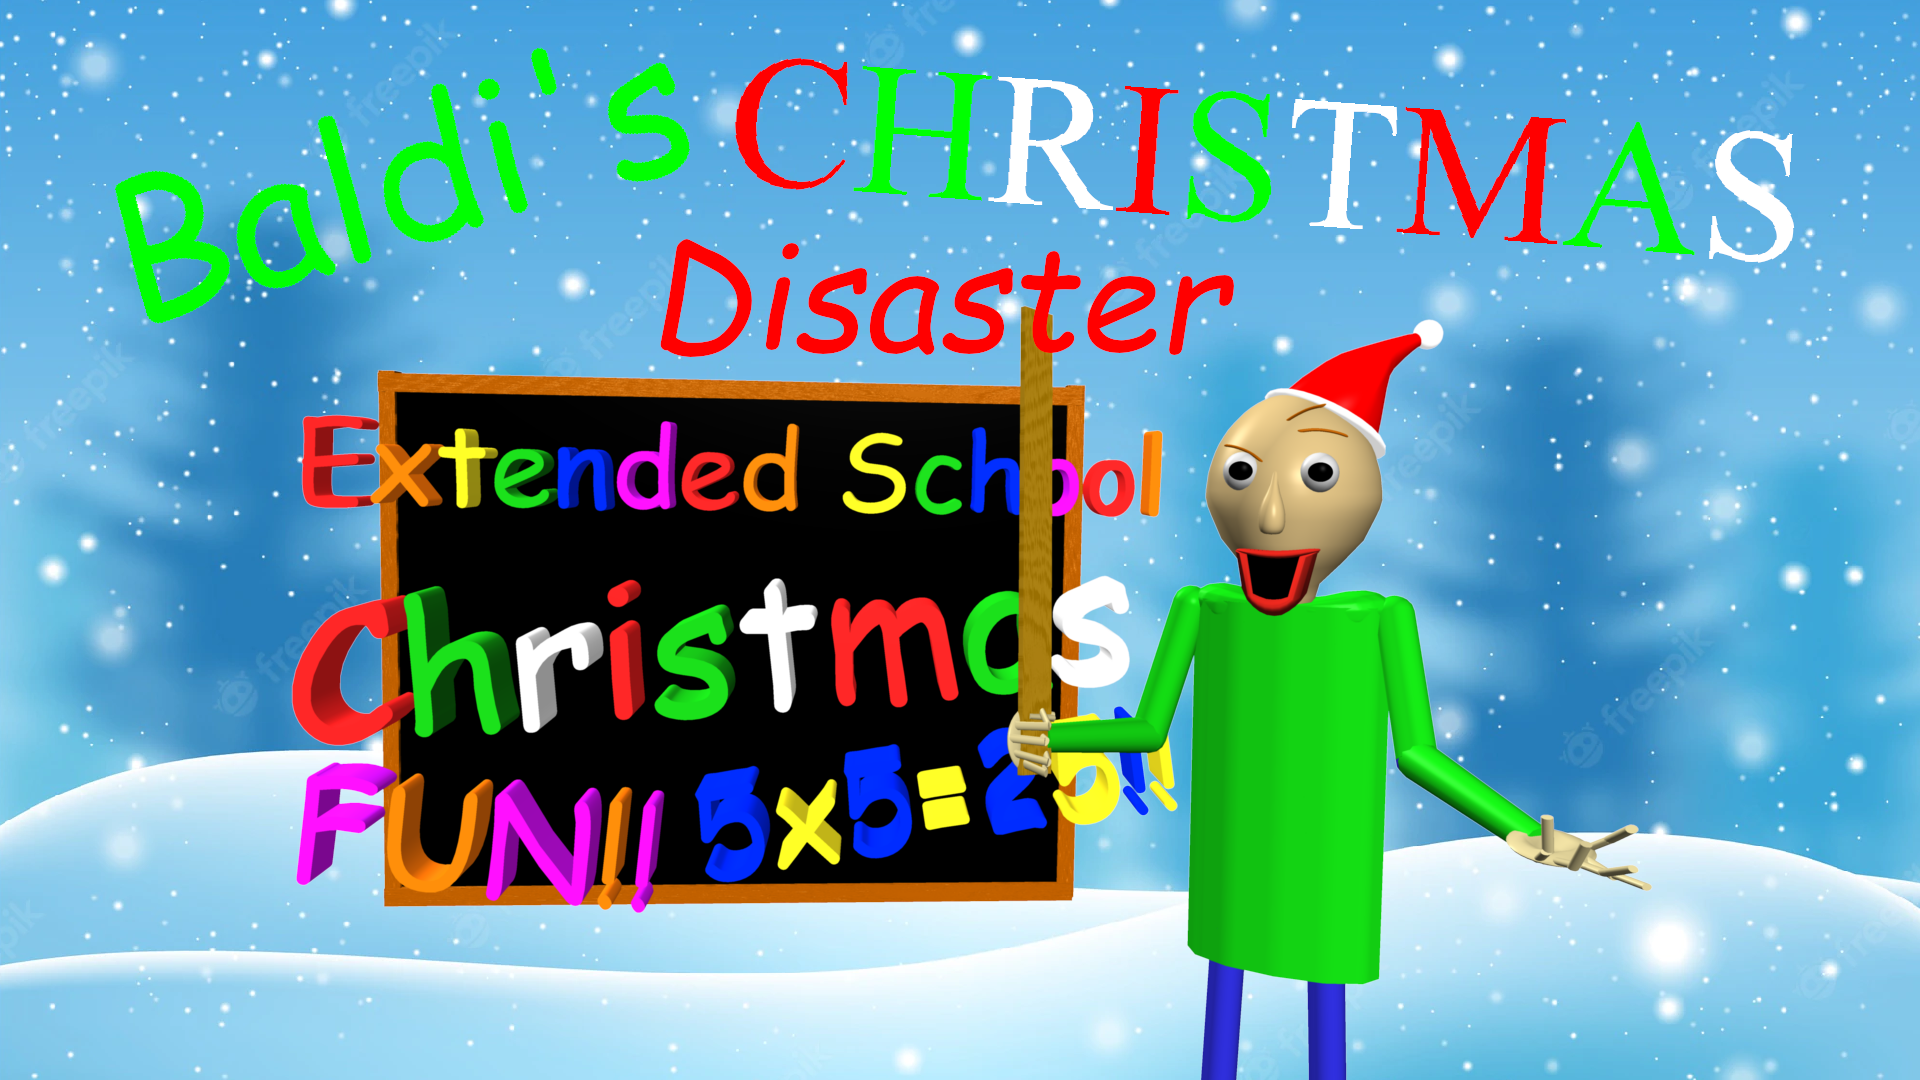 Baldi's Christmas Disaster!!